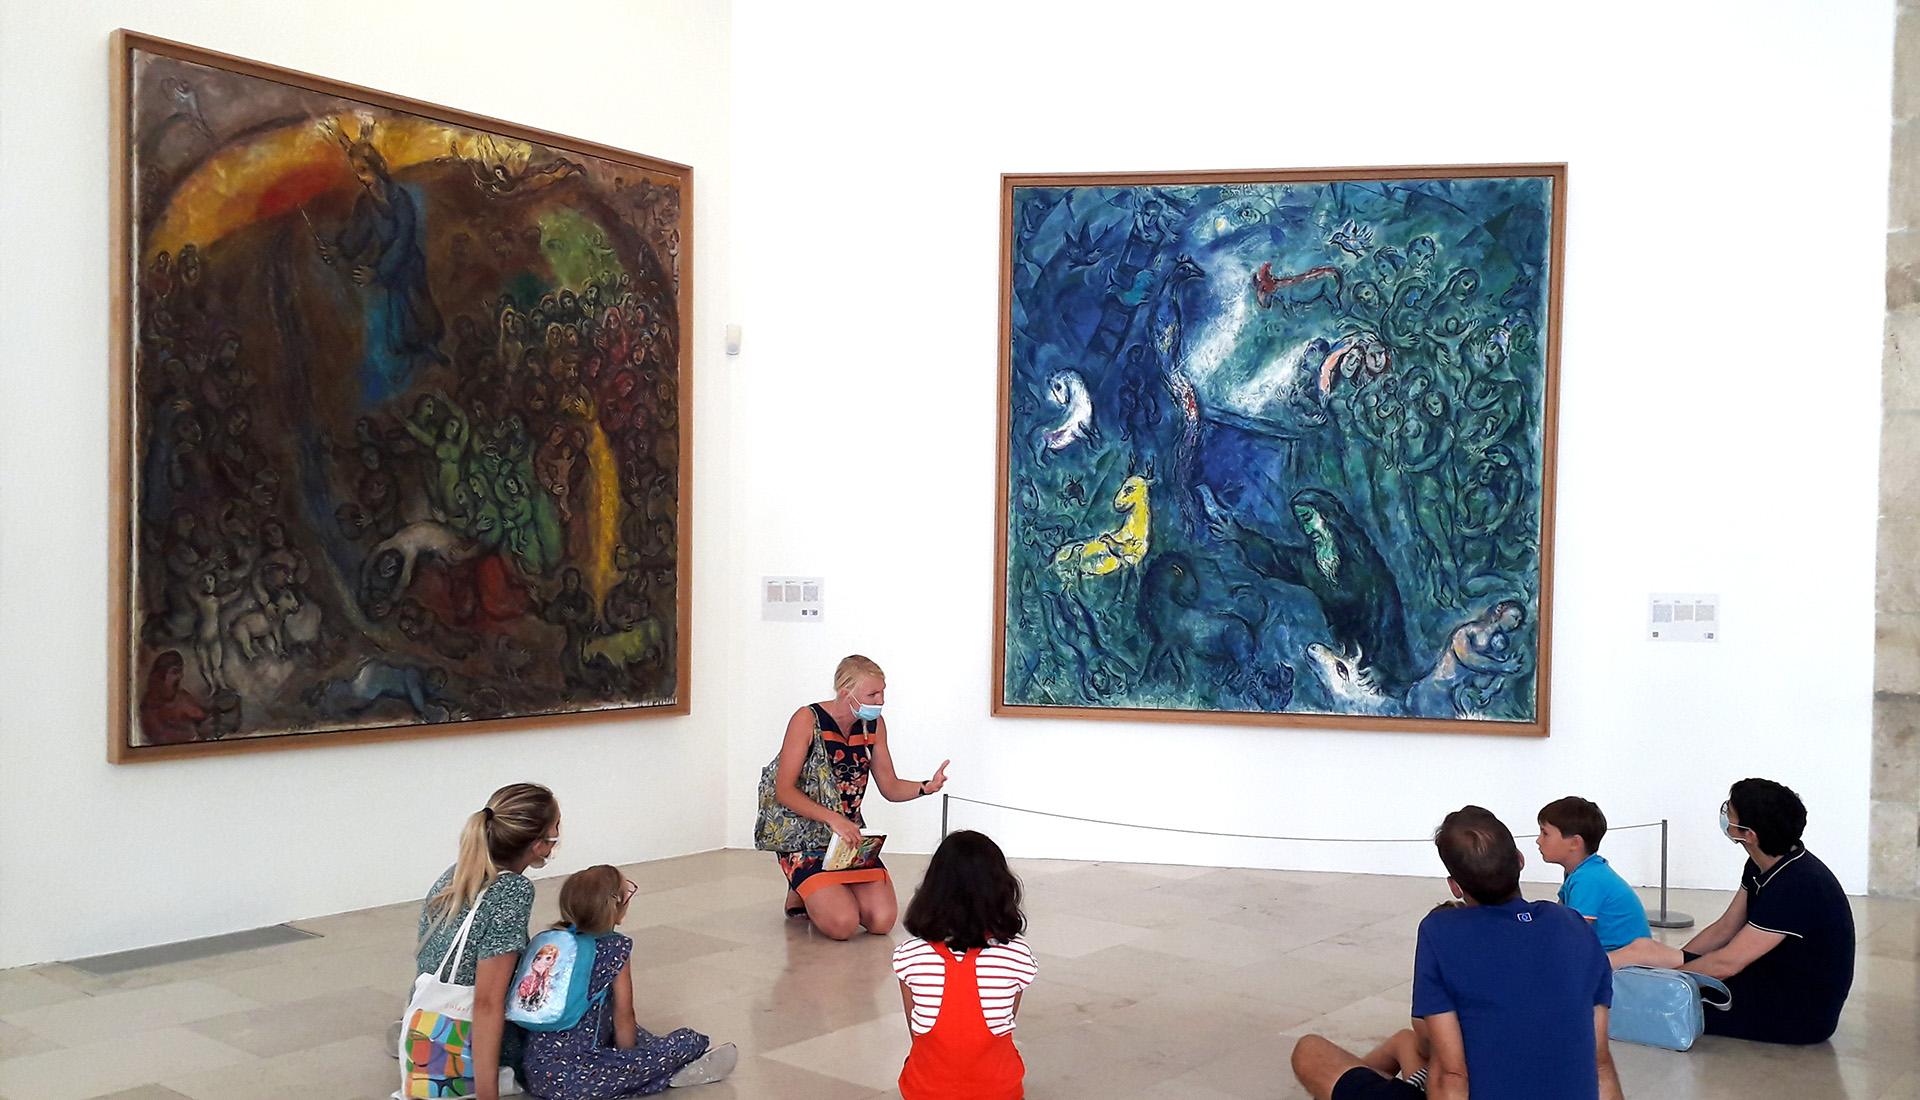 visite guidée, salle du Message Biblique, musée national Marc Chagall, Nice. (c) ADAGP, Paris, 2021